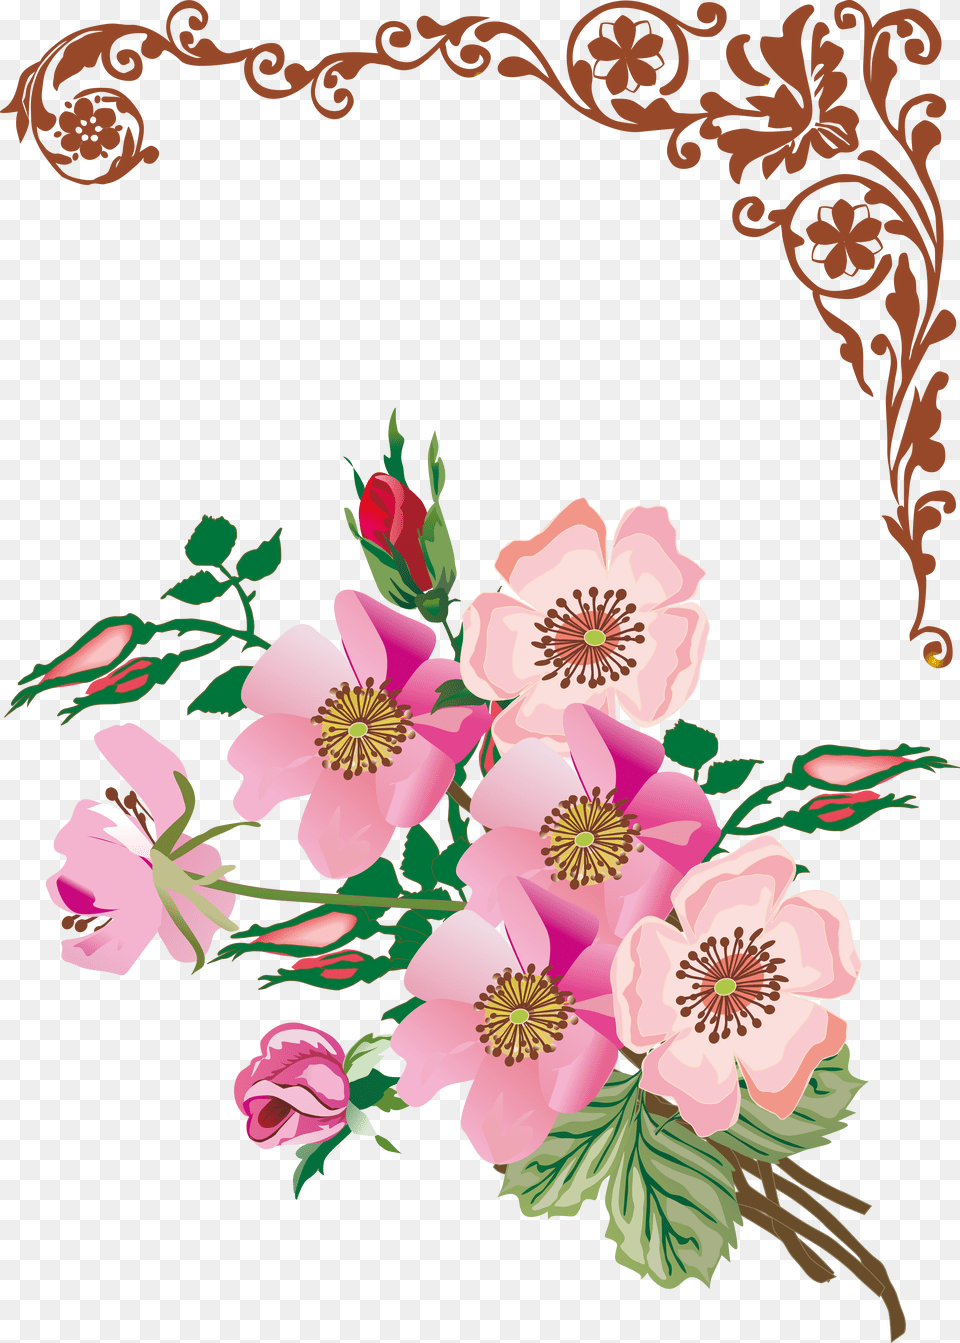 Floral Design Flower, Art, Floral Design, Graphics, Pattern Free Png Download